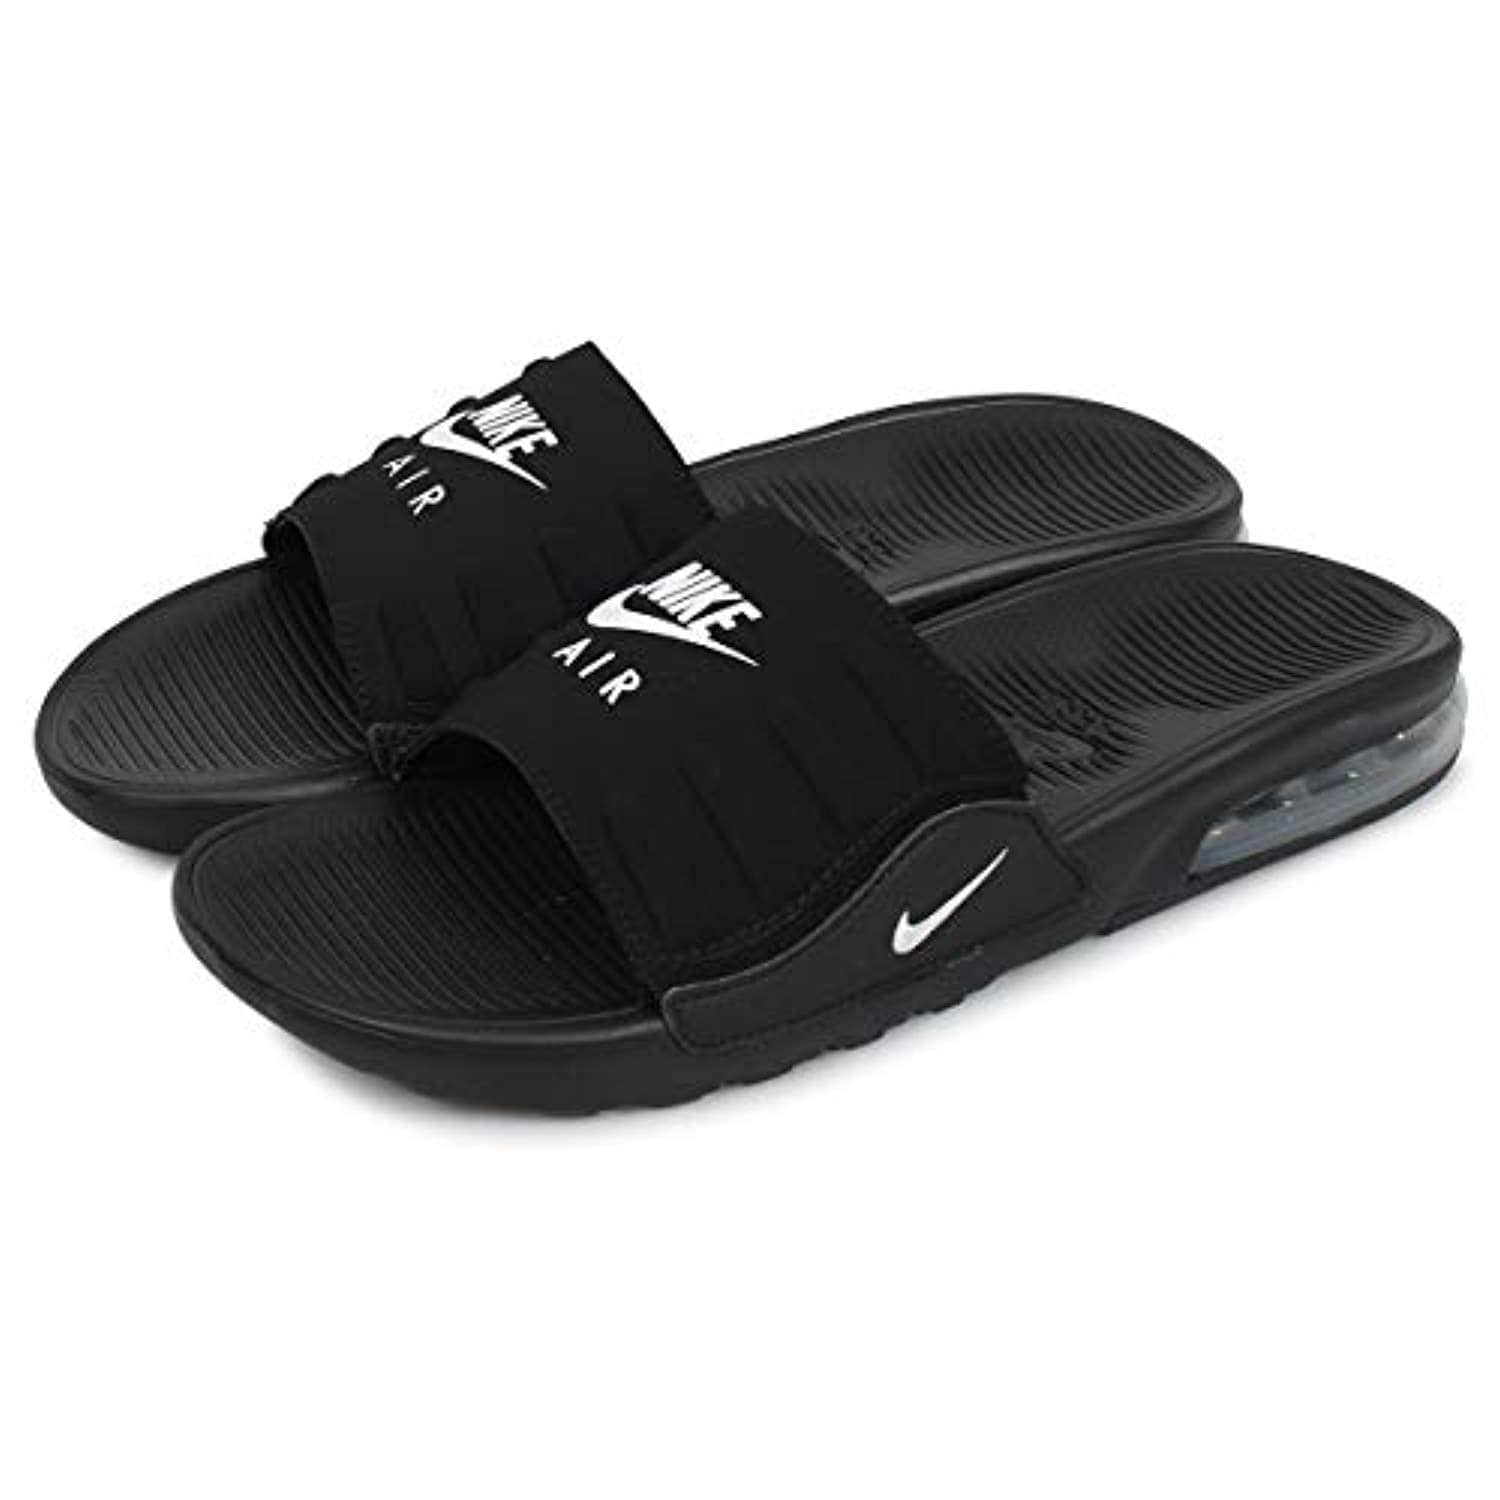 nike men's slide sandals size 12